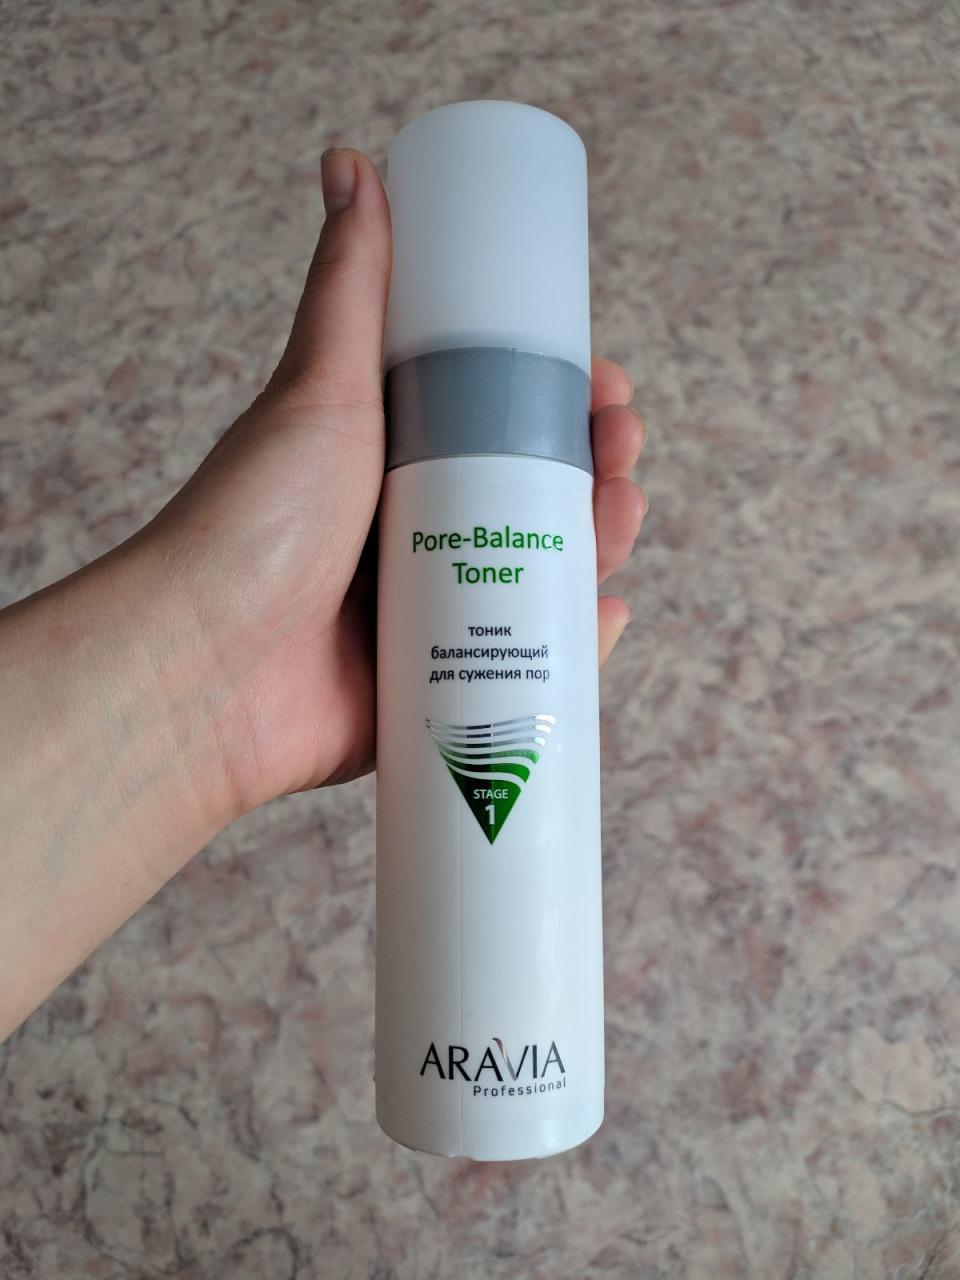 Отзыв на товар: Тоник балансирующий для сужения пор для жирной и проблемной кожи Pore-Balance Toner. Aravia Professional.